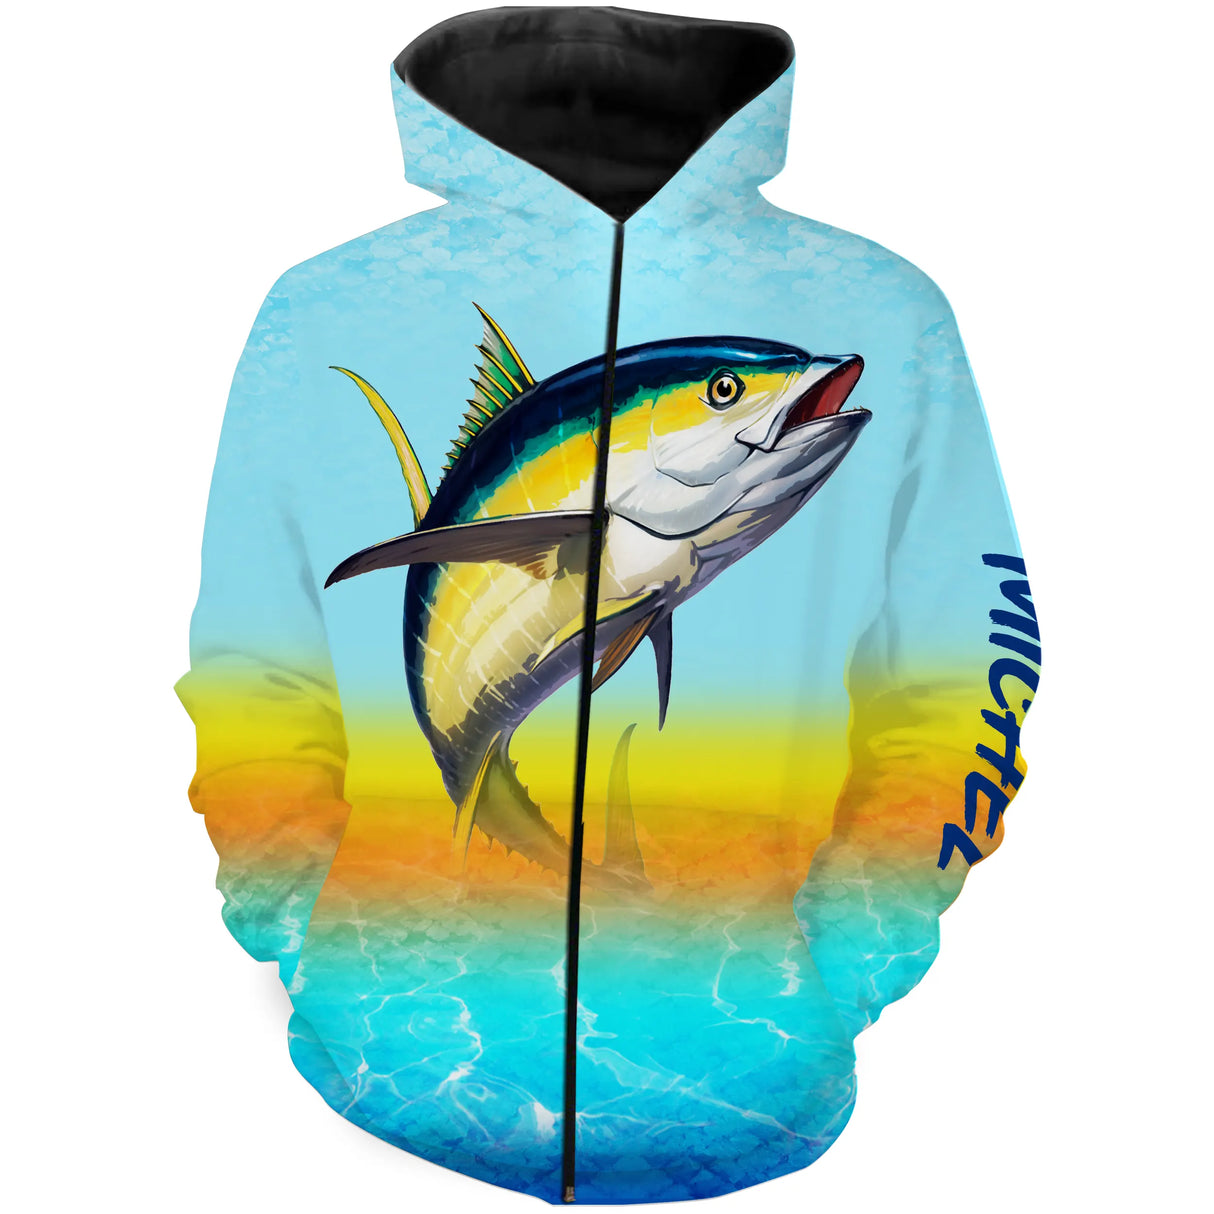 Camiseta personalizada de pesca de atún anti UV, regalo original de pescador, pesca en el mar - CT05082221